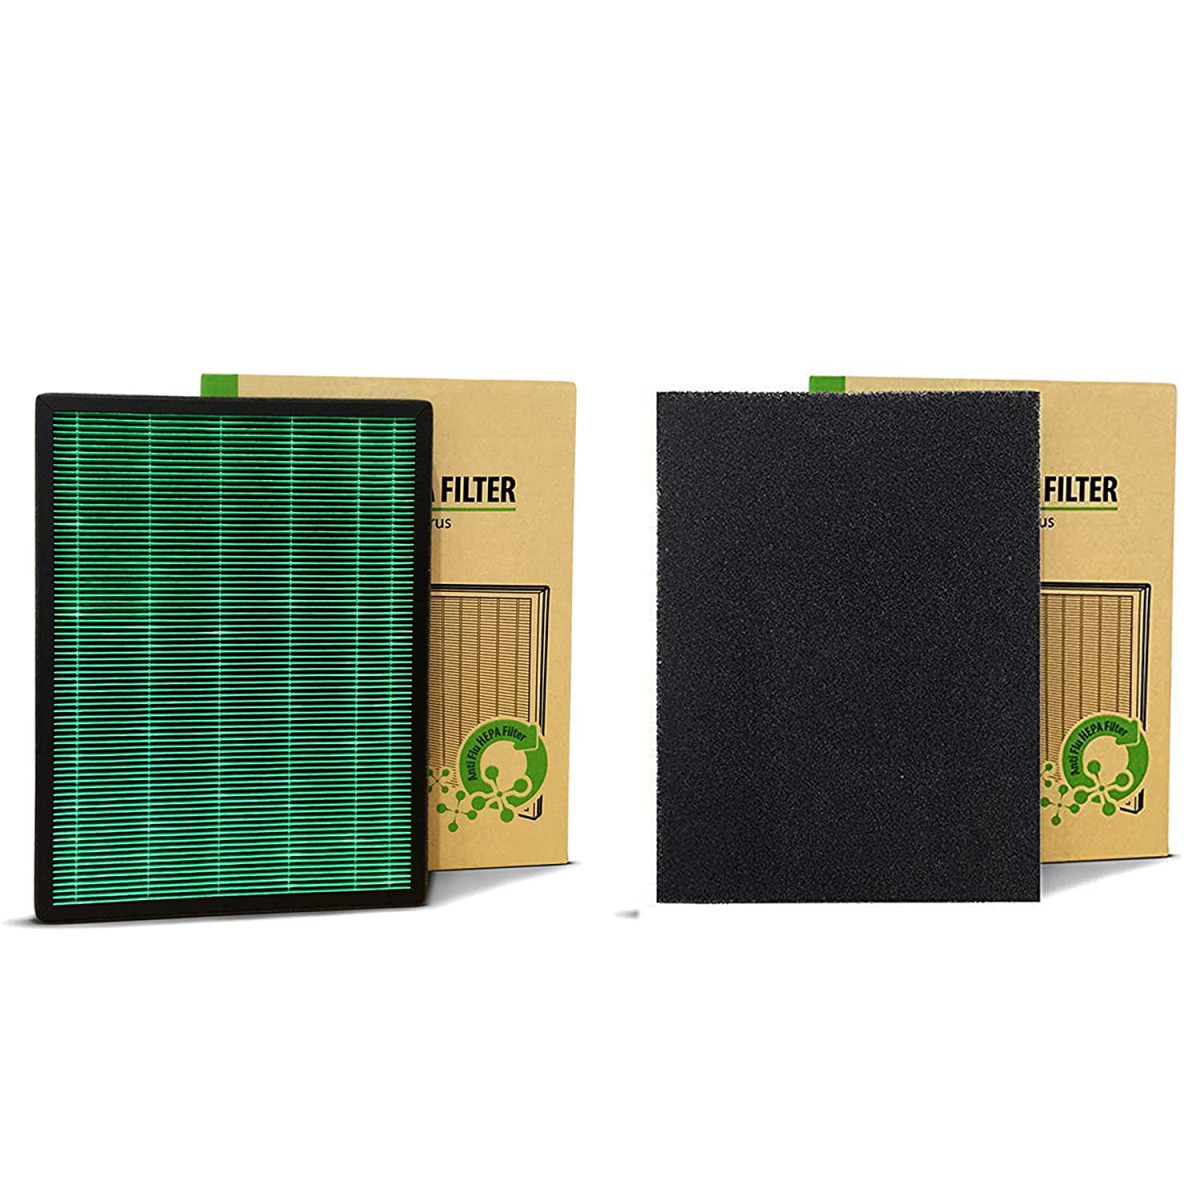 Coway Filter Air Purifier, Longest Filter Life 8500 Hrs, Green True Hepa Filter, Traps 99.99% Virus & Pm 0.1 Particles (Filter Set (Sleek Pro | Ap-1009Ch))